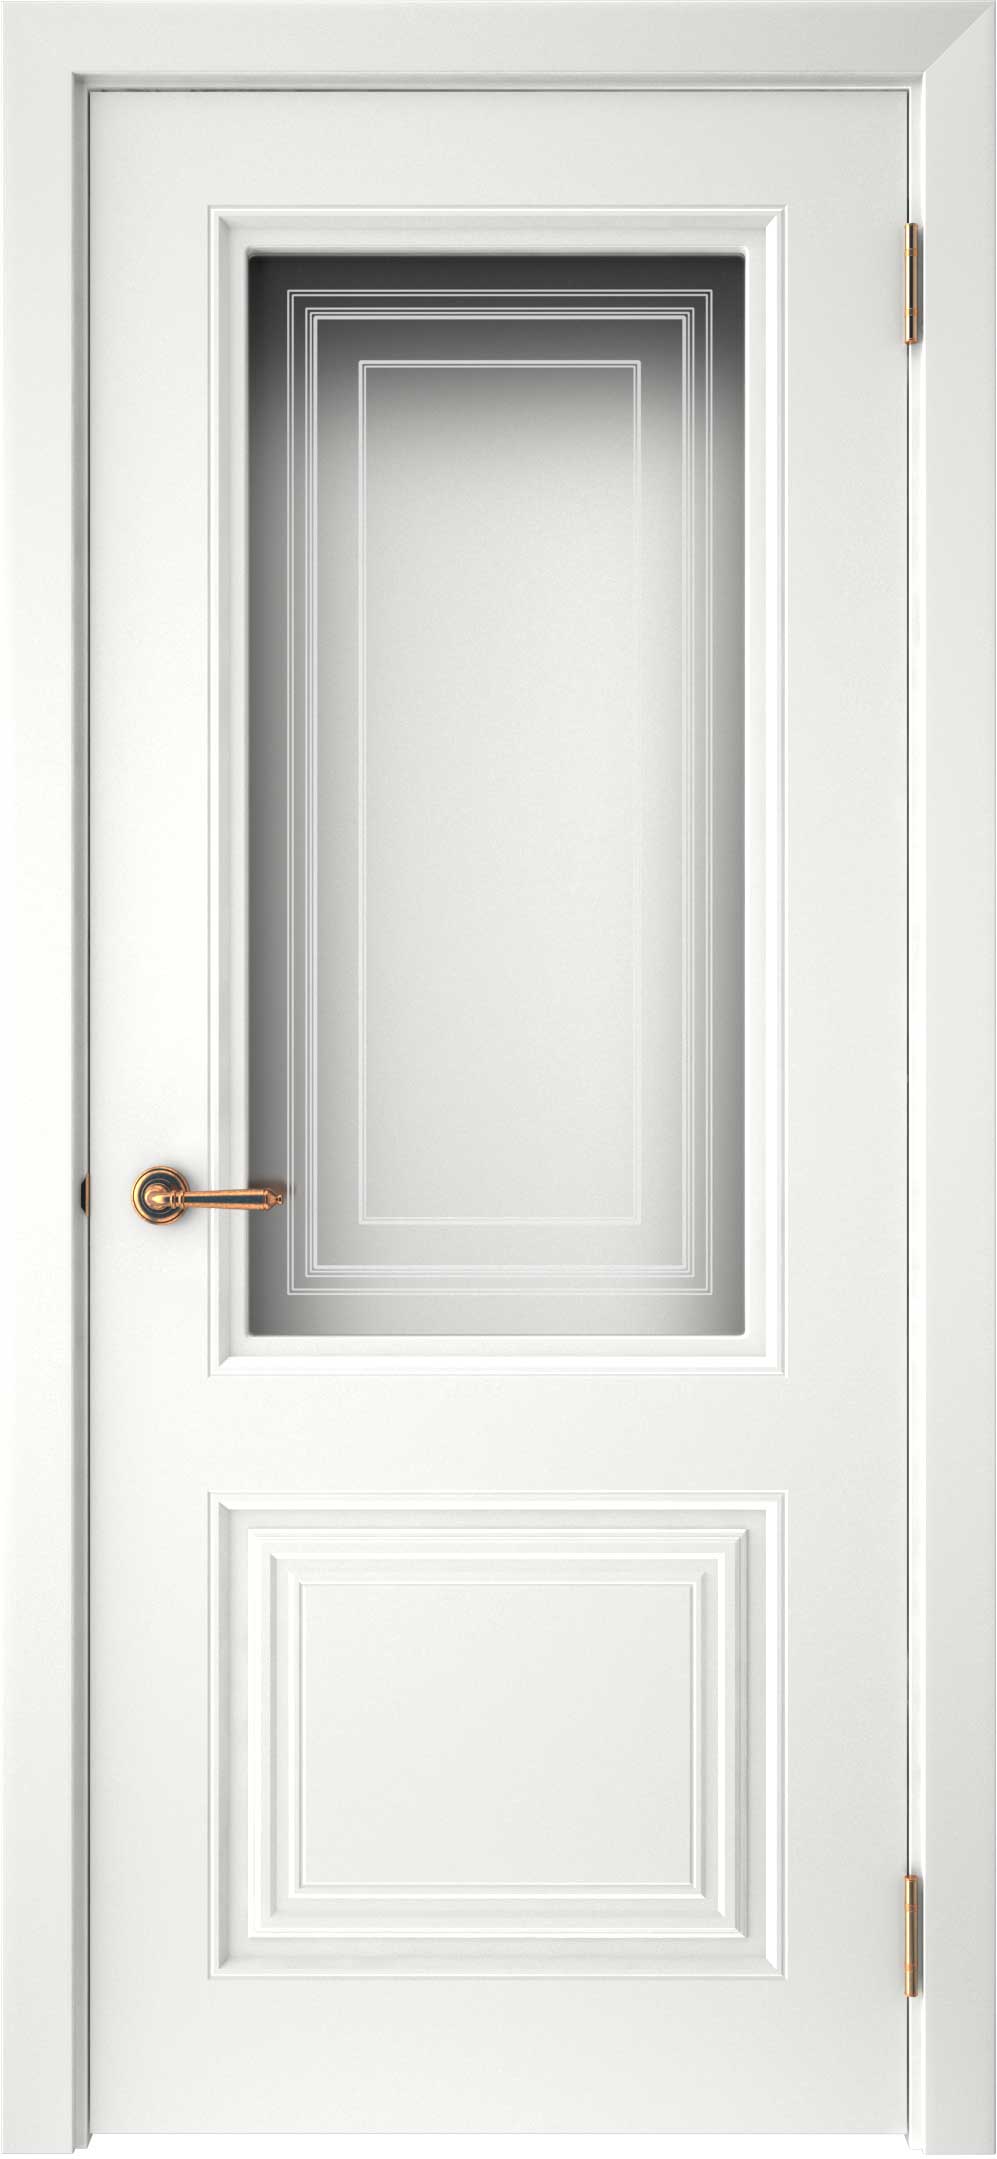 Двери крашеные (Эмаль) ТЕКОНА Смальта-42 со стеклом Белый ral размер 200 х 60 см. артикул F0000093289